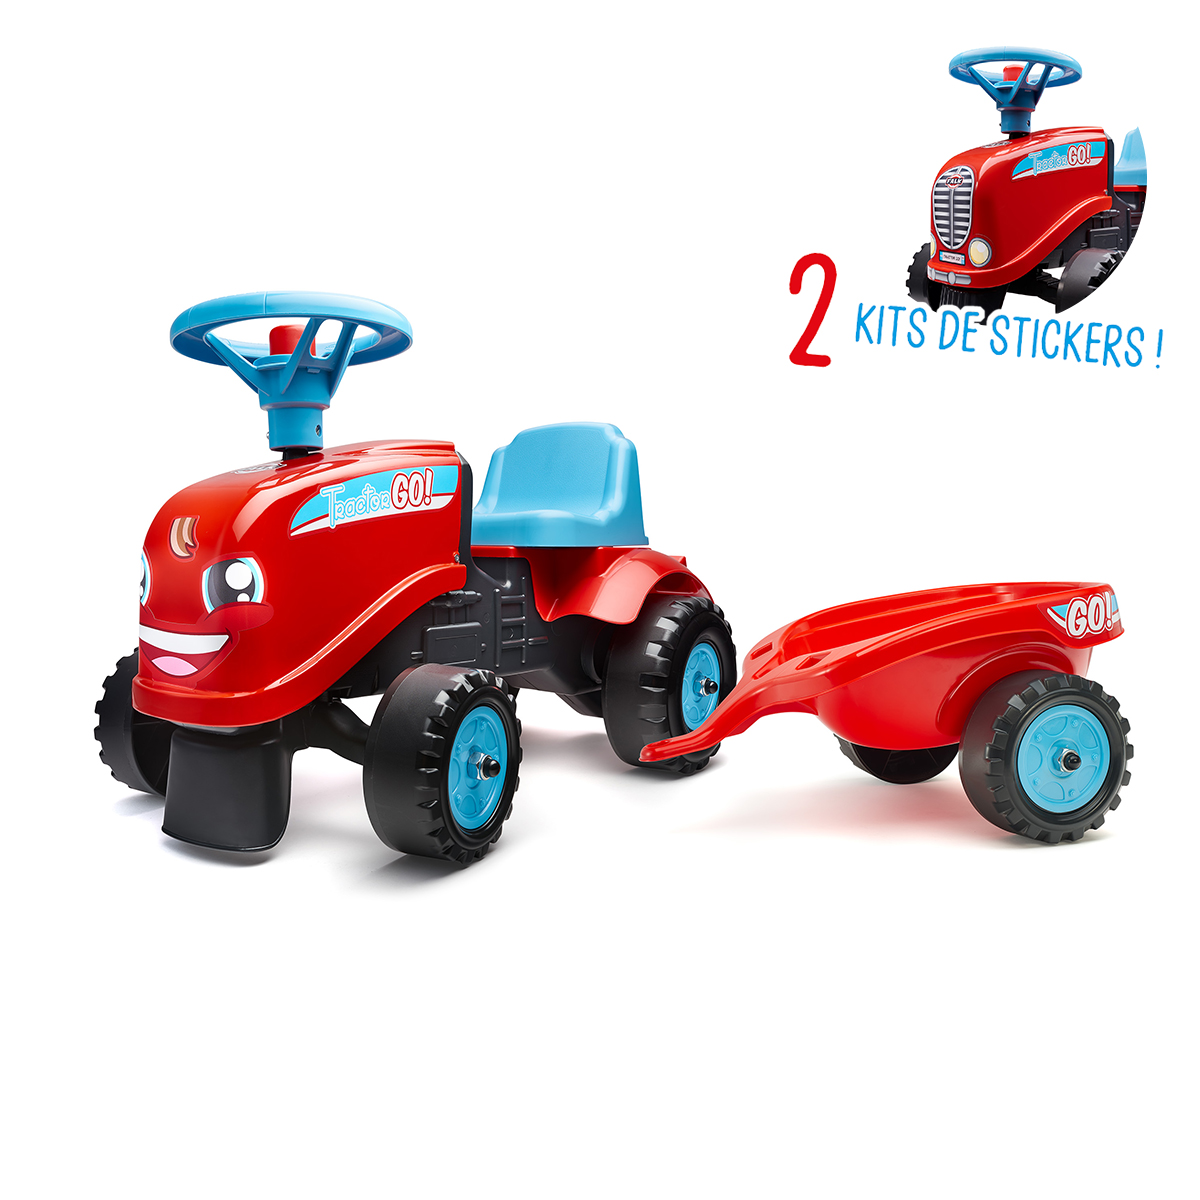 Porteur Falk Tractor Go avec remorque et kit de stickers alternatifs - Rouge